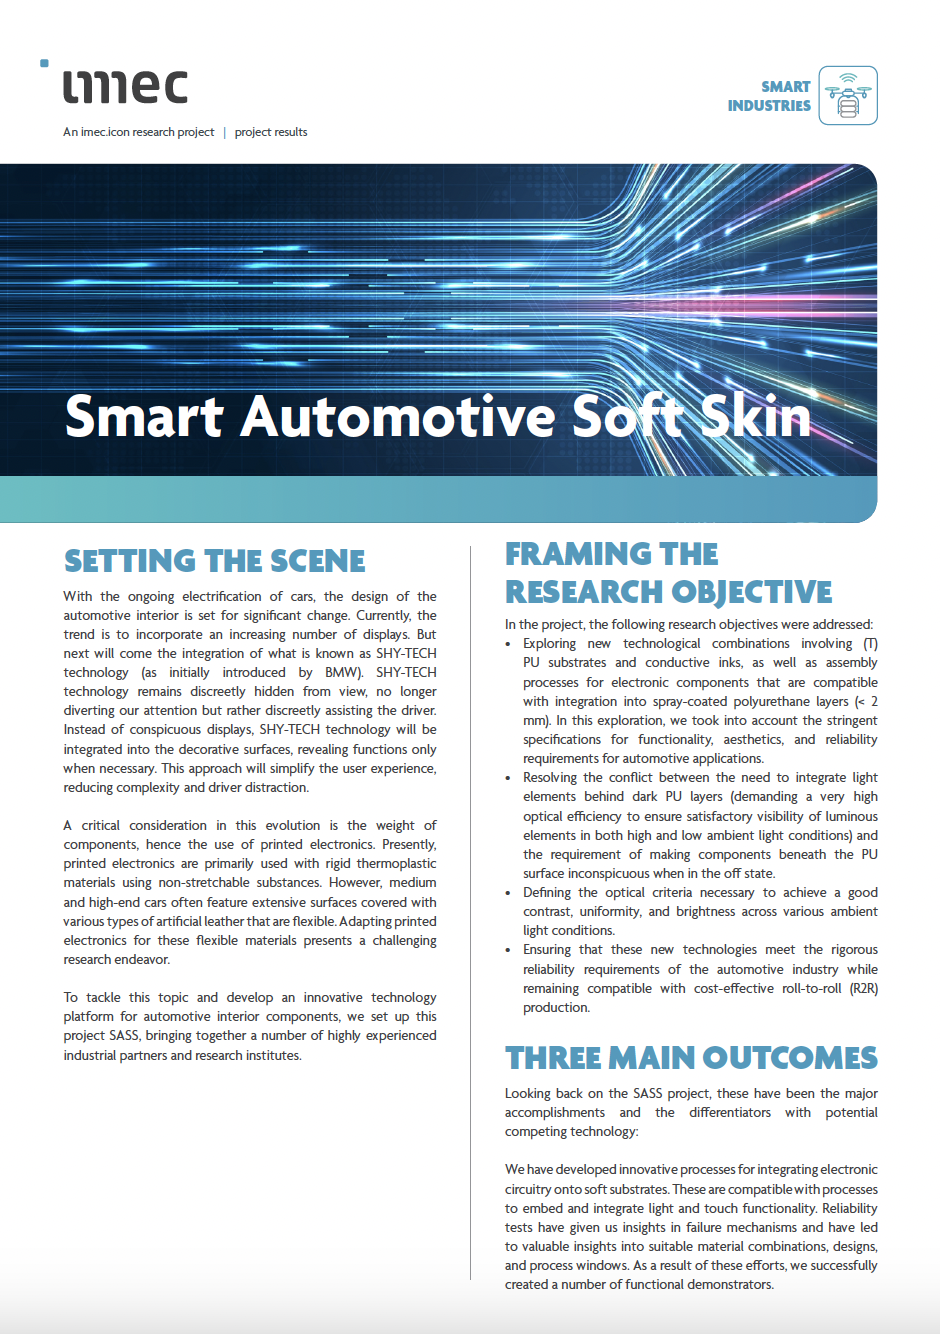 Smart Automotive Soft Skin leaflet